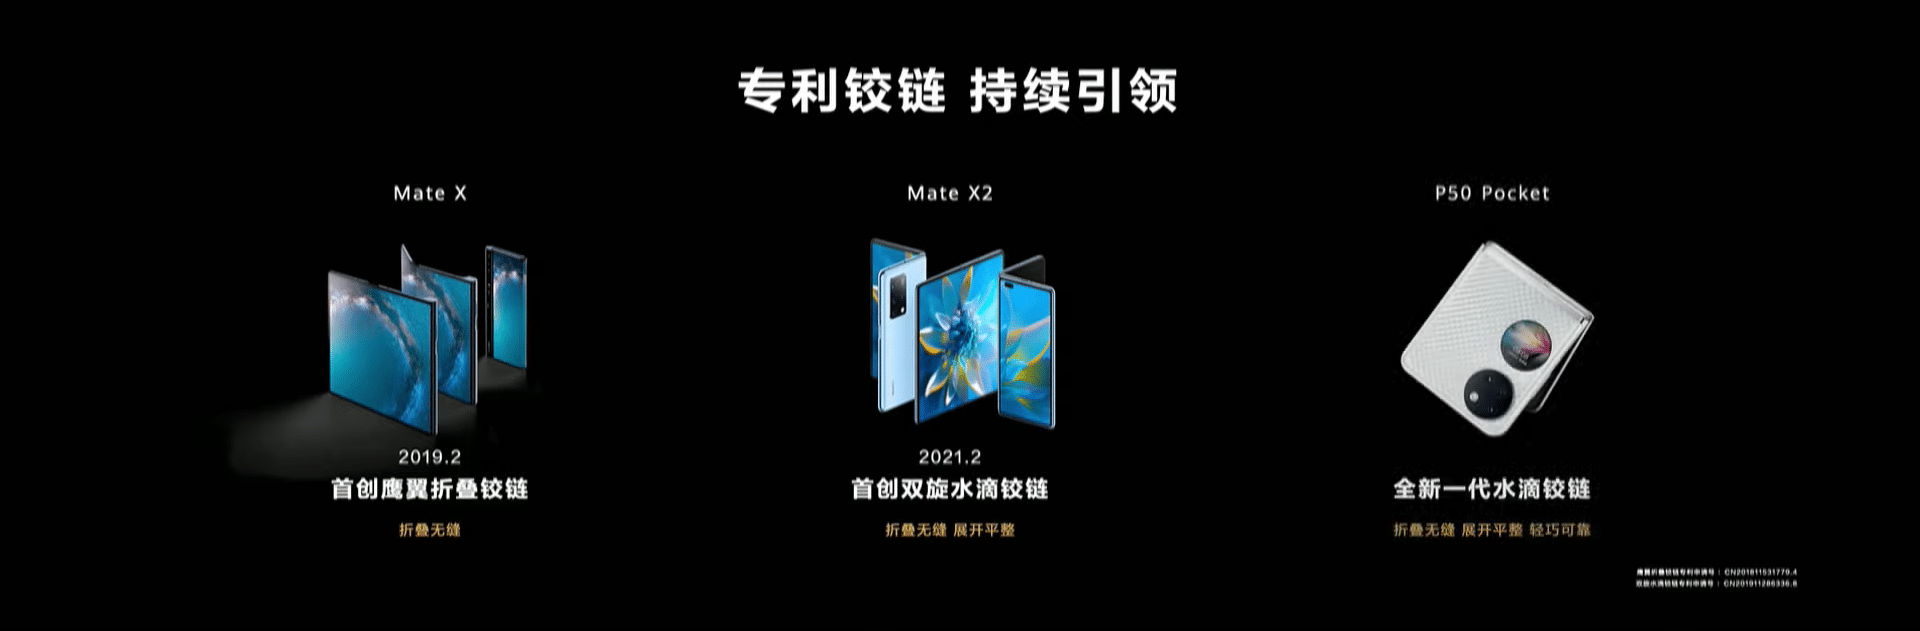 يتميز P50 Pocket القابل للطي من Huawei بشاشة خارجية دائرية مثالية للإشعارات 3